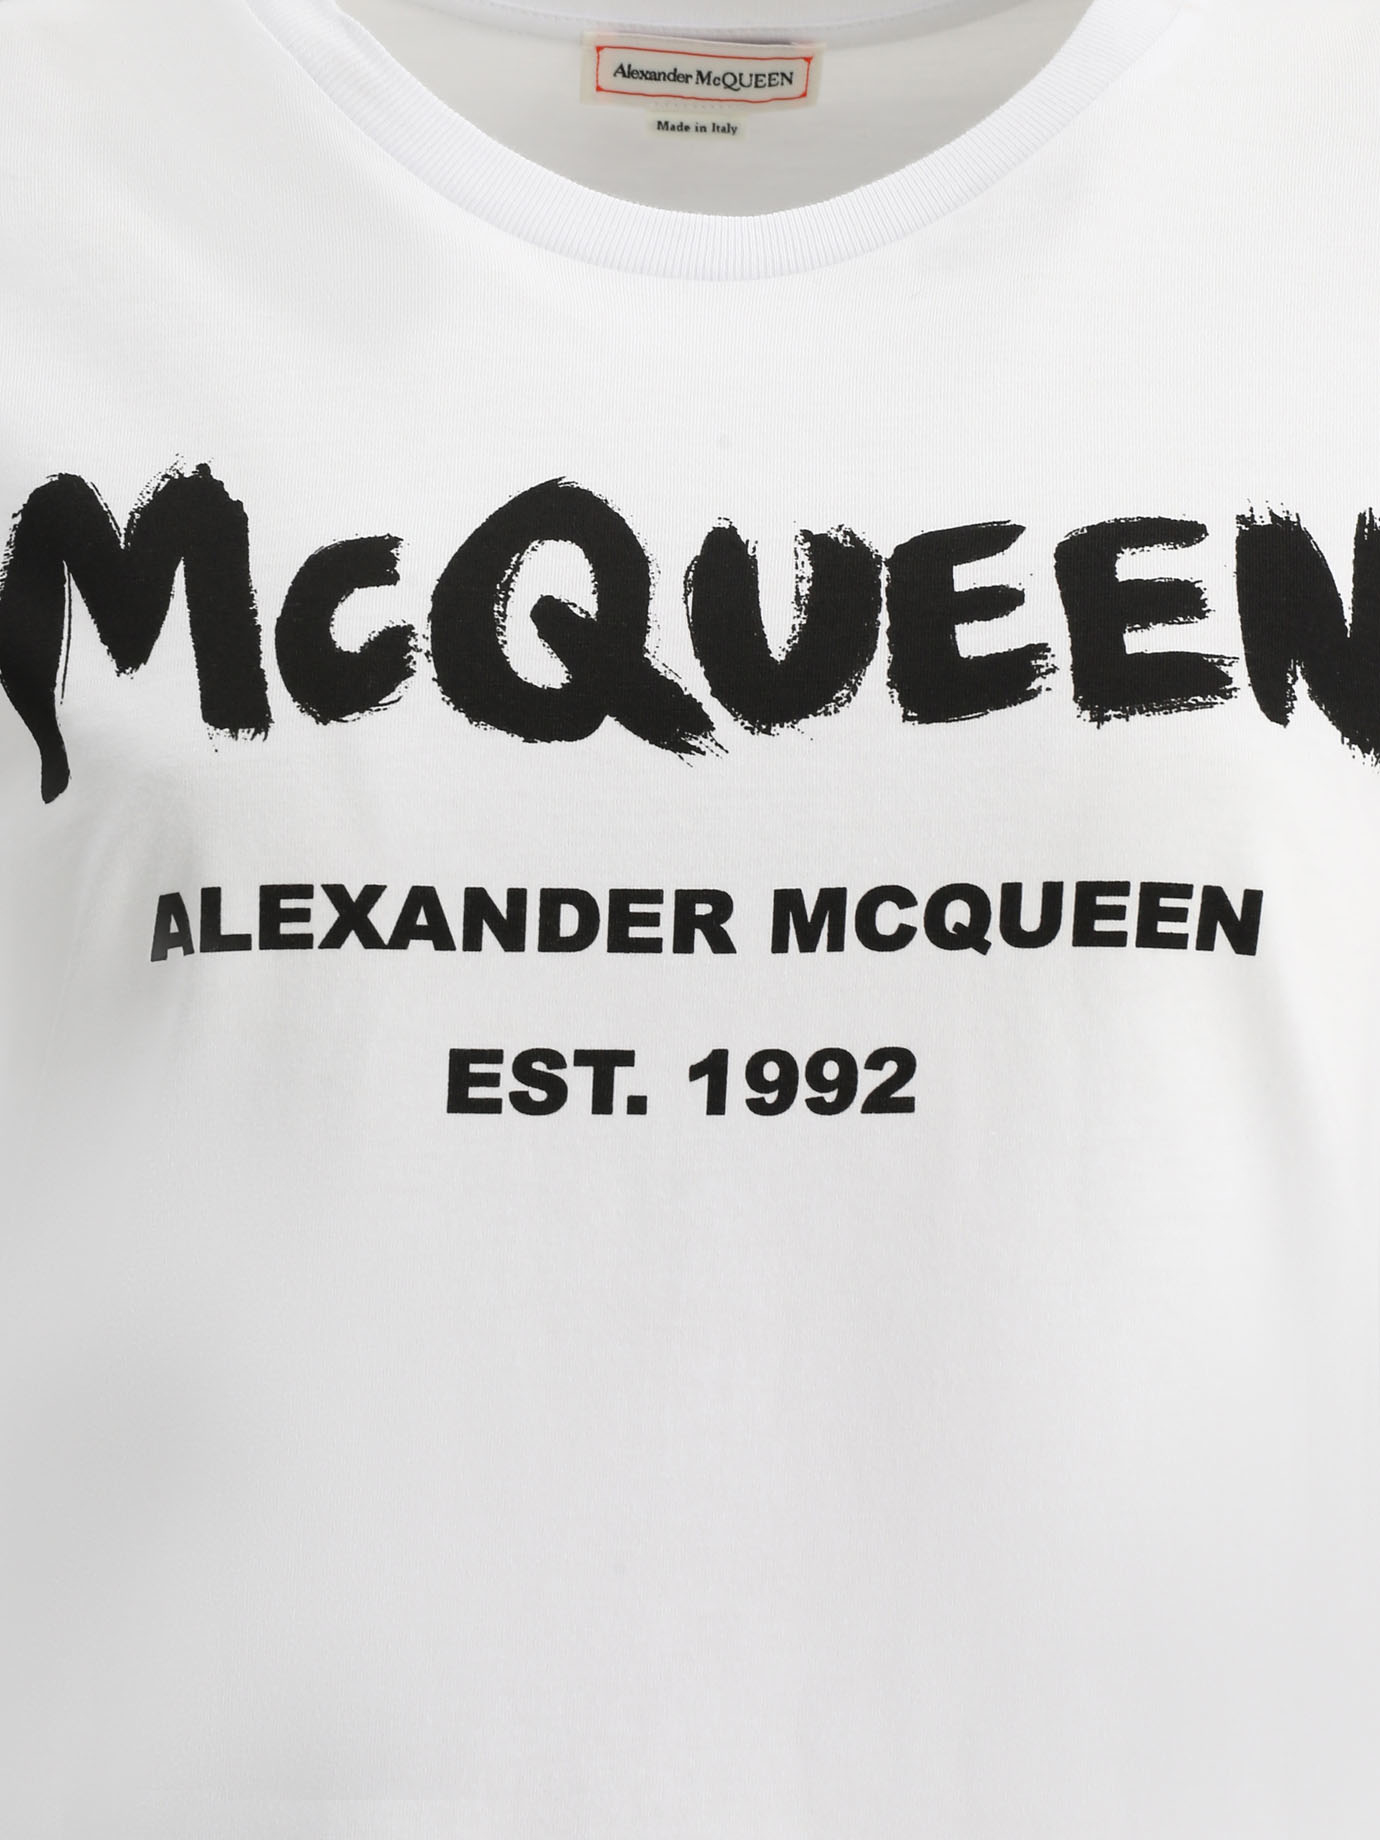 ALEXANDER MCQUEEN Graffiti t-shirt